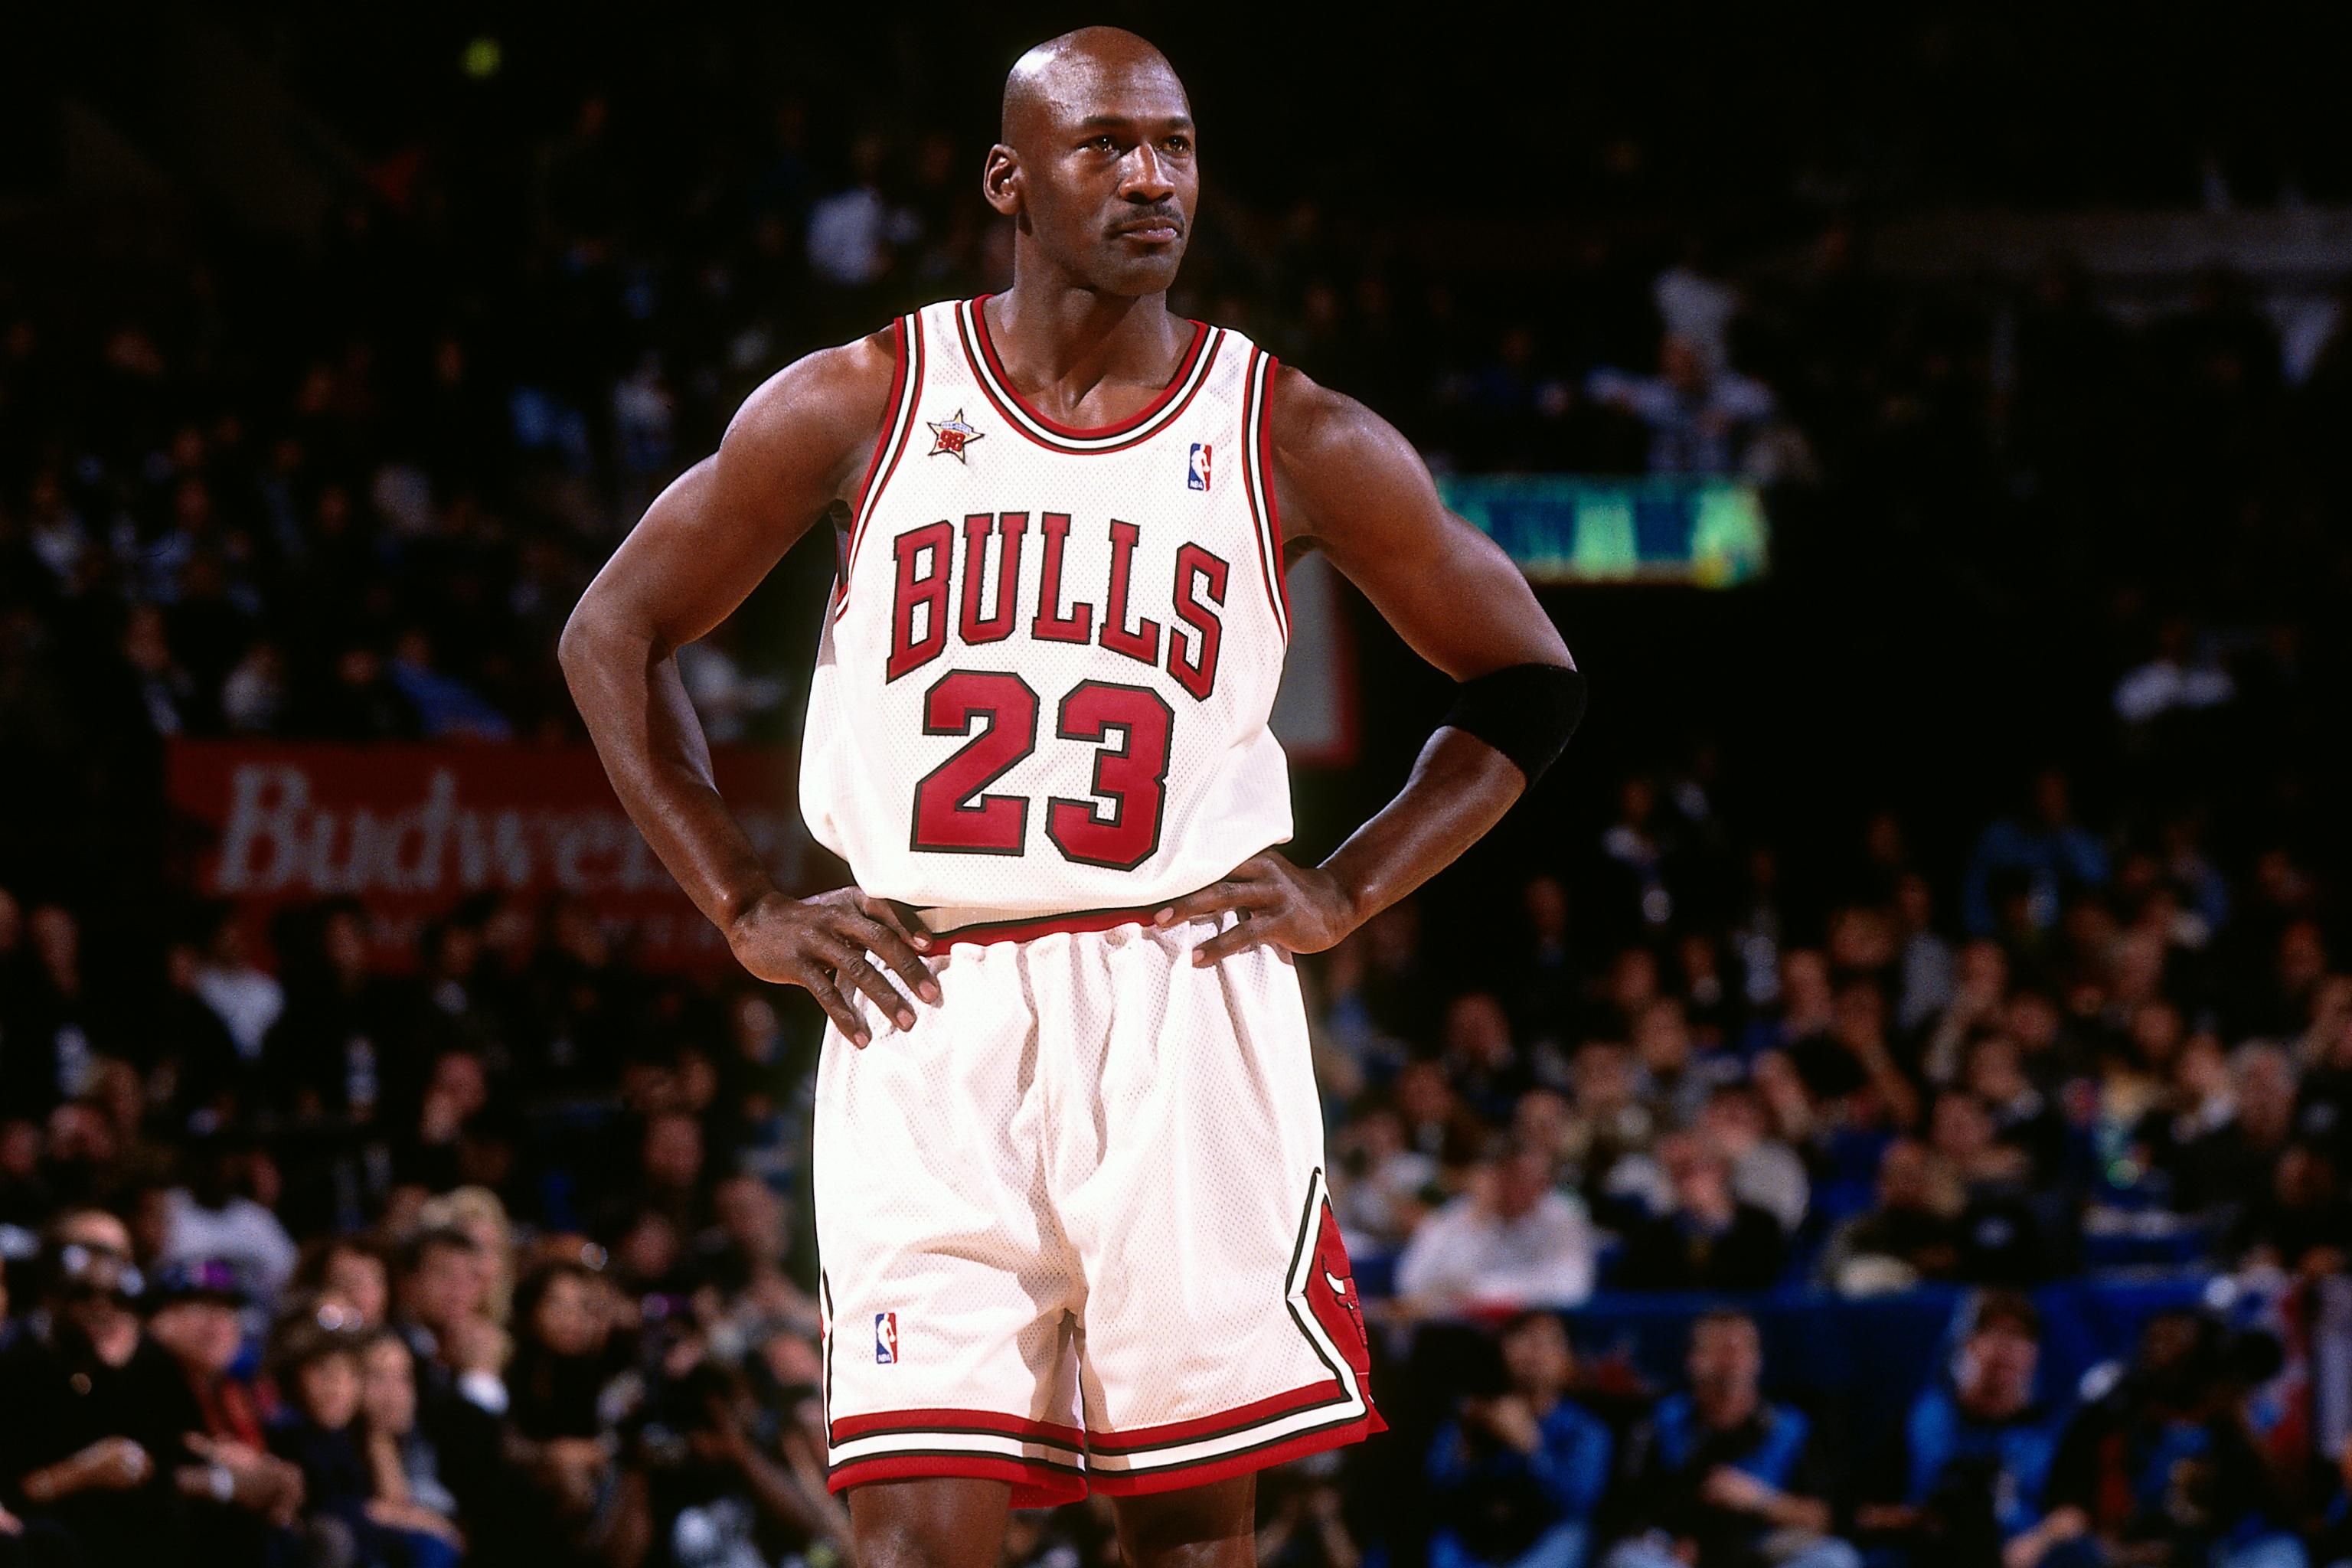 1998 MVP Race: Michael Jordan Won His Last MVP Award With More